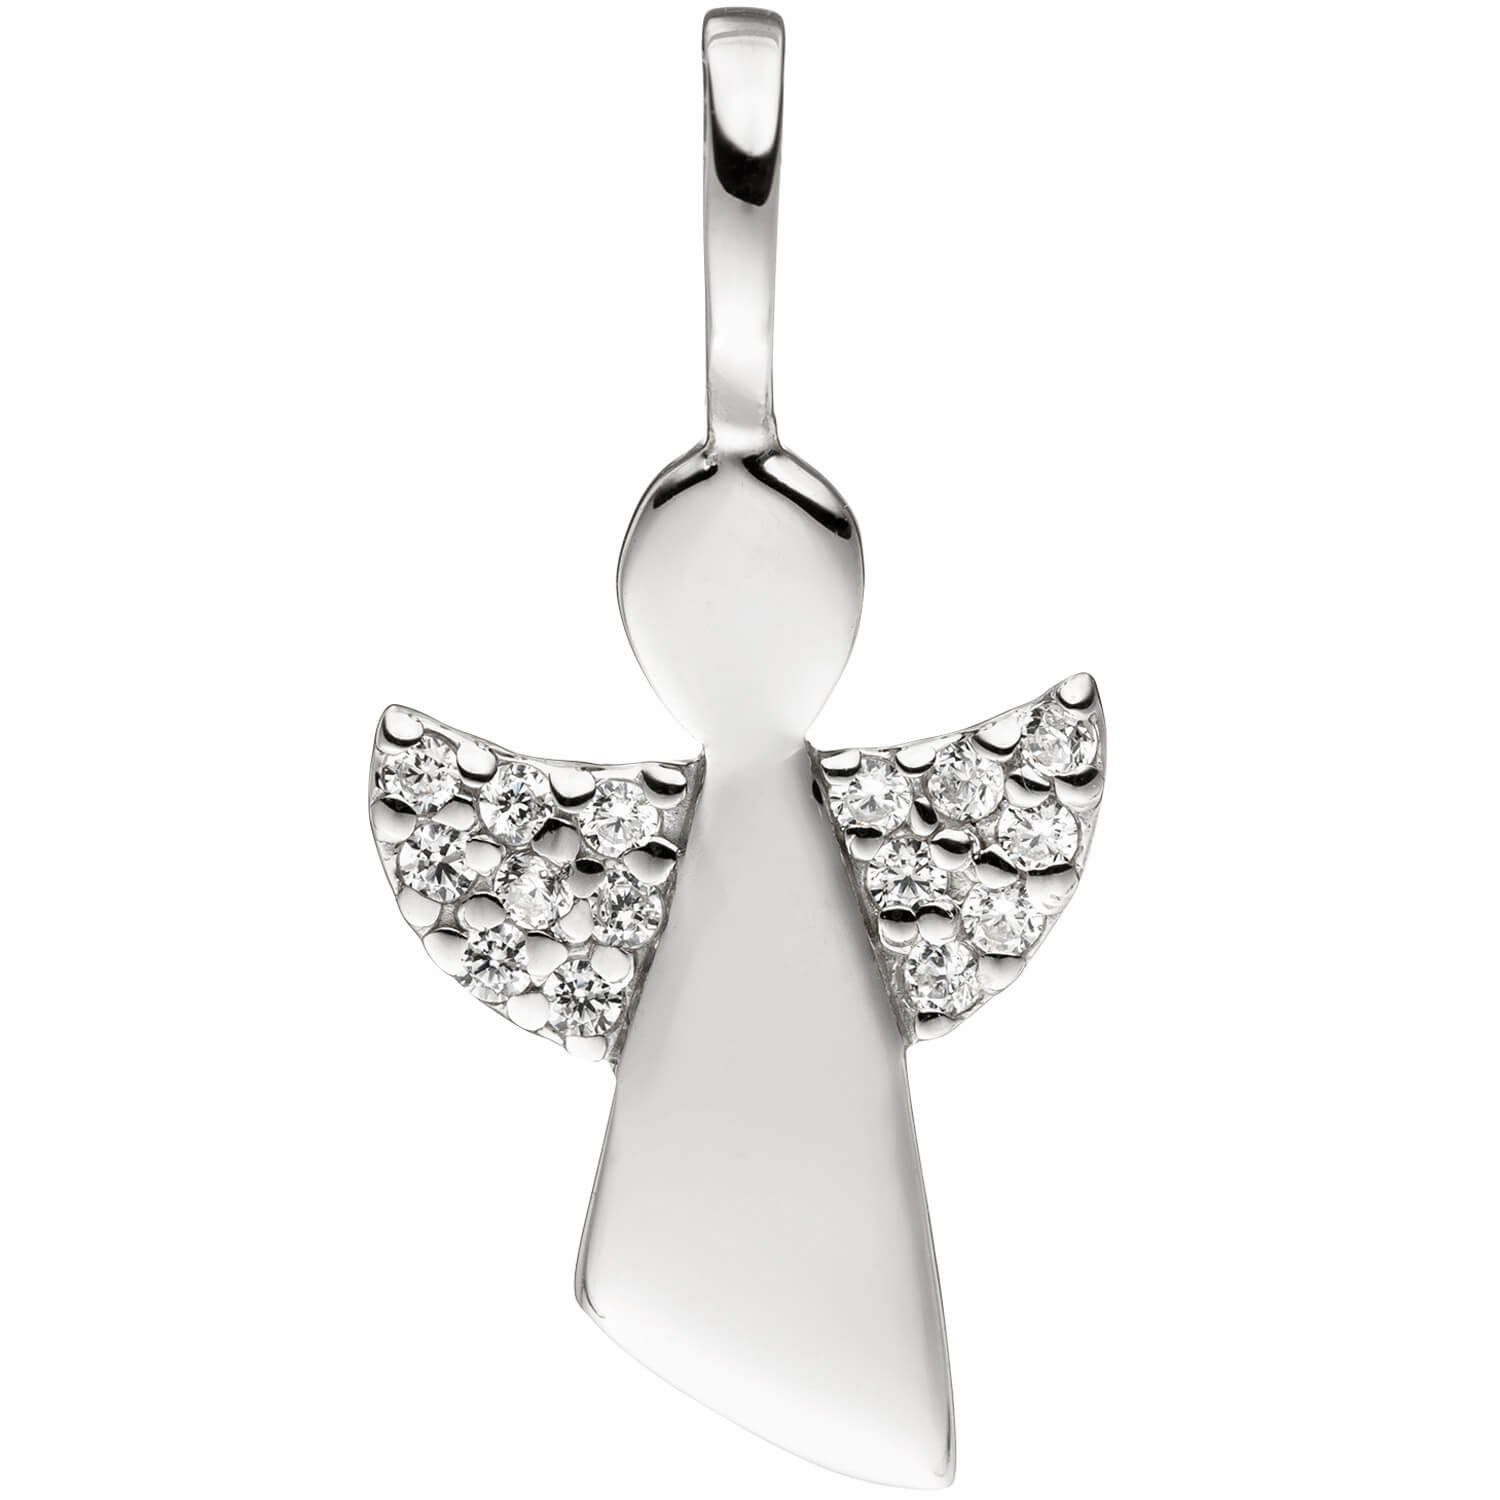 Schmuck Silberkette Engel Schutzengel für Silber Kinder 925 mit Krone Anhänger 38cm Halskette mit Zirkonia